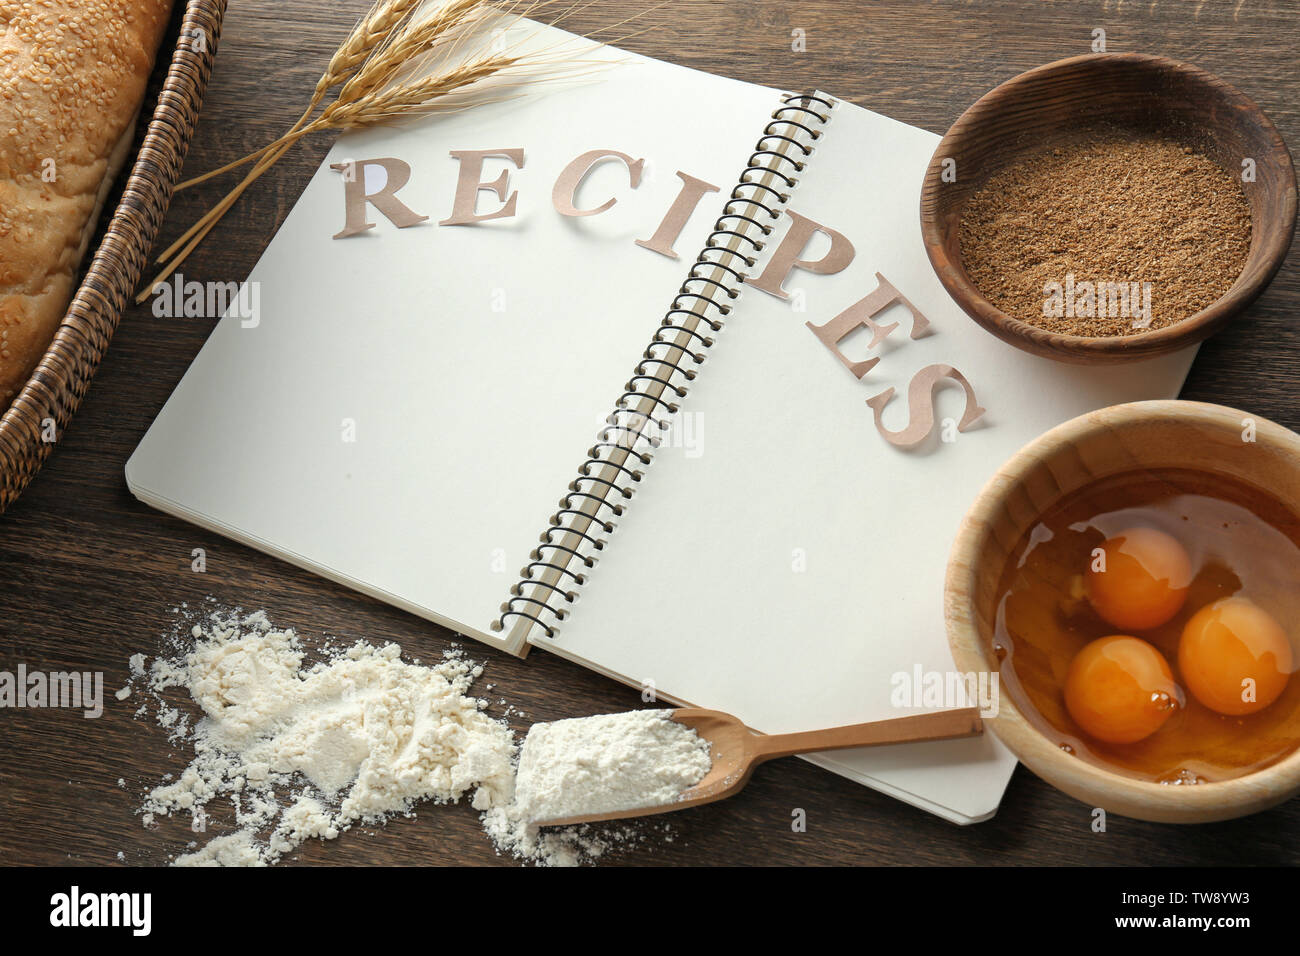 Word recipes fotografías e imágenes de alta resolución - Alamy